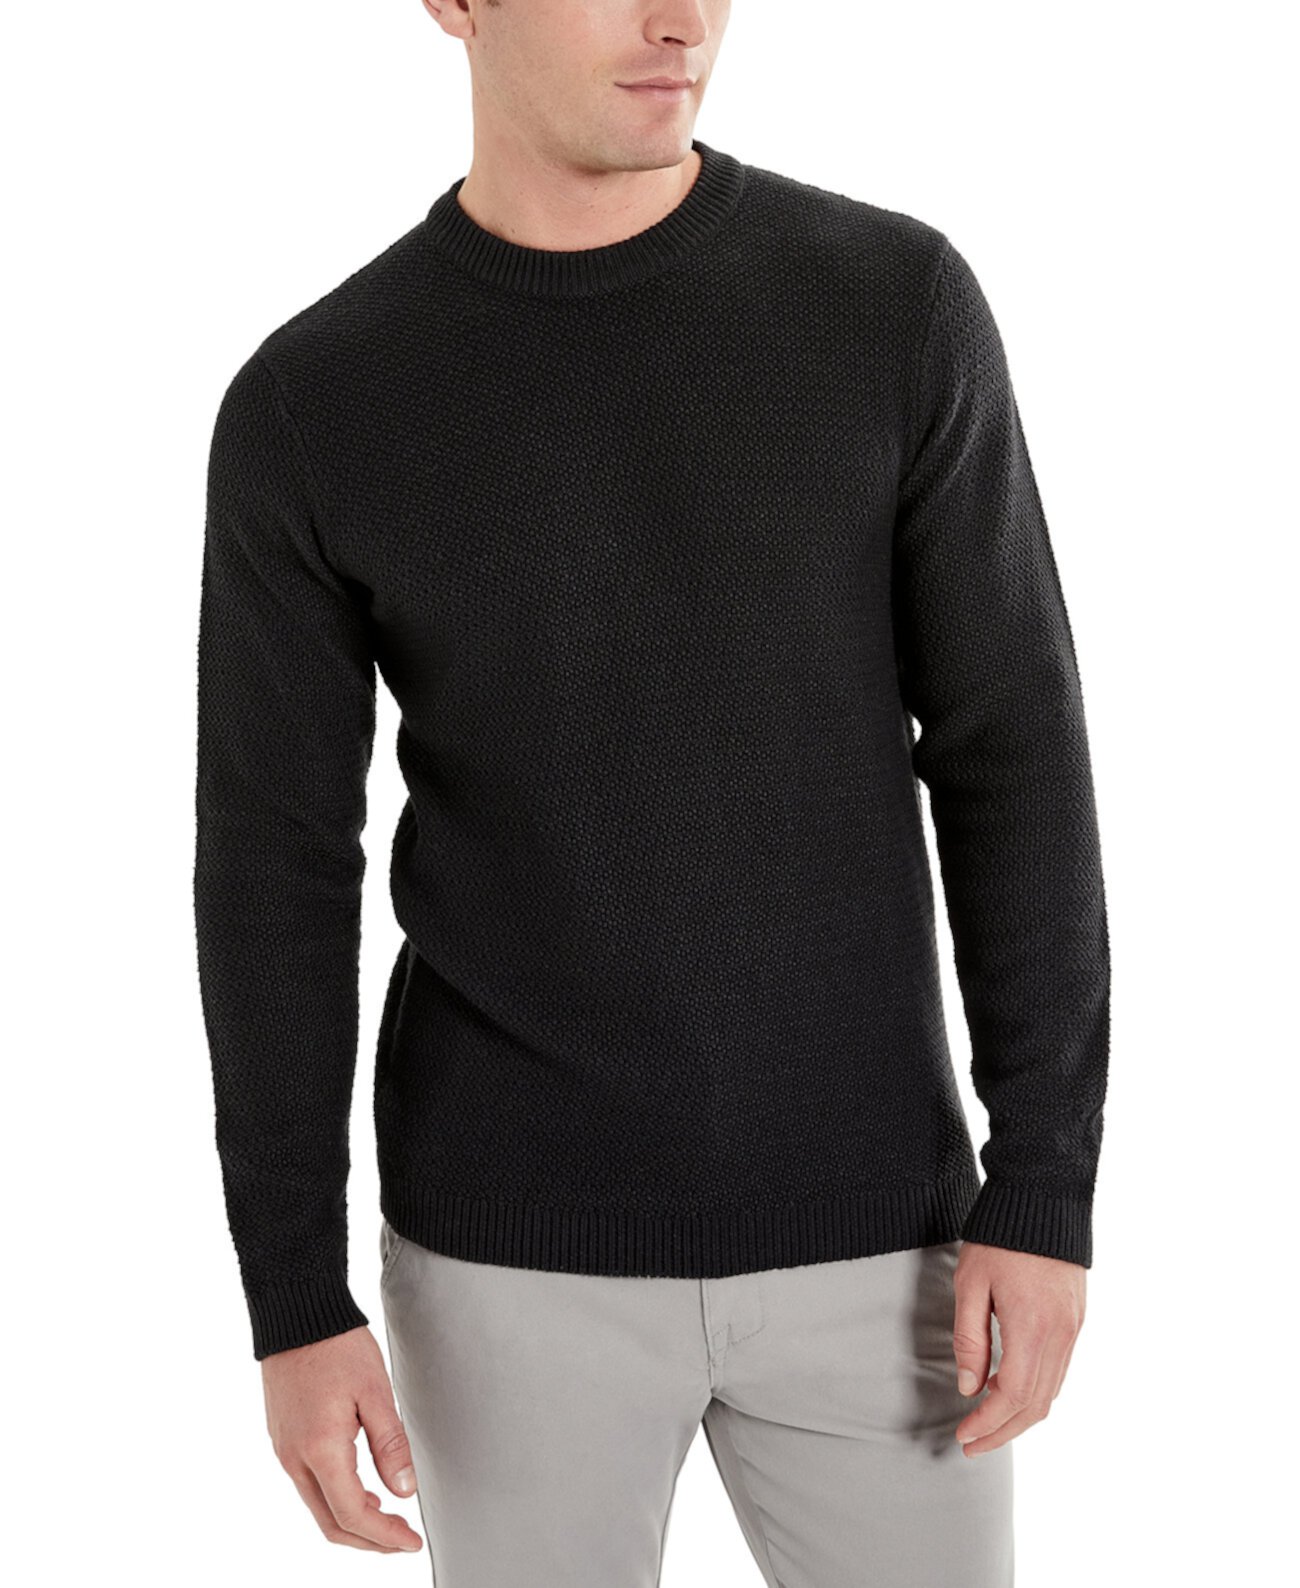 Мужской приталенный свитер с круглым вырезом в стиле попкорн Kenneth Cole